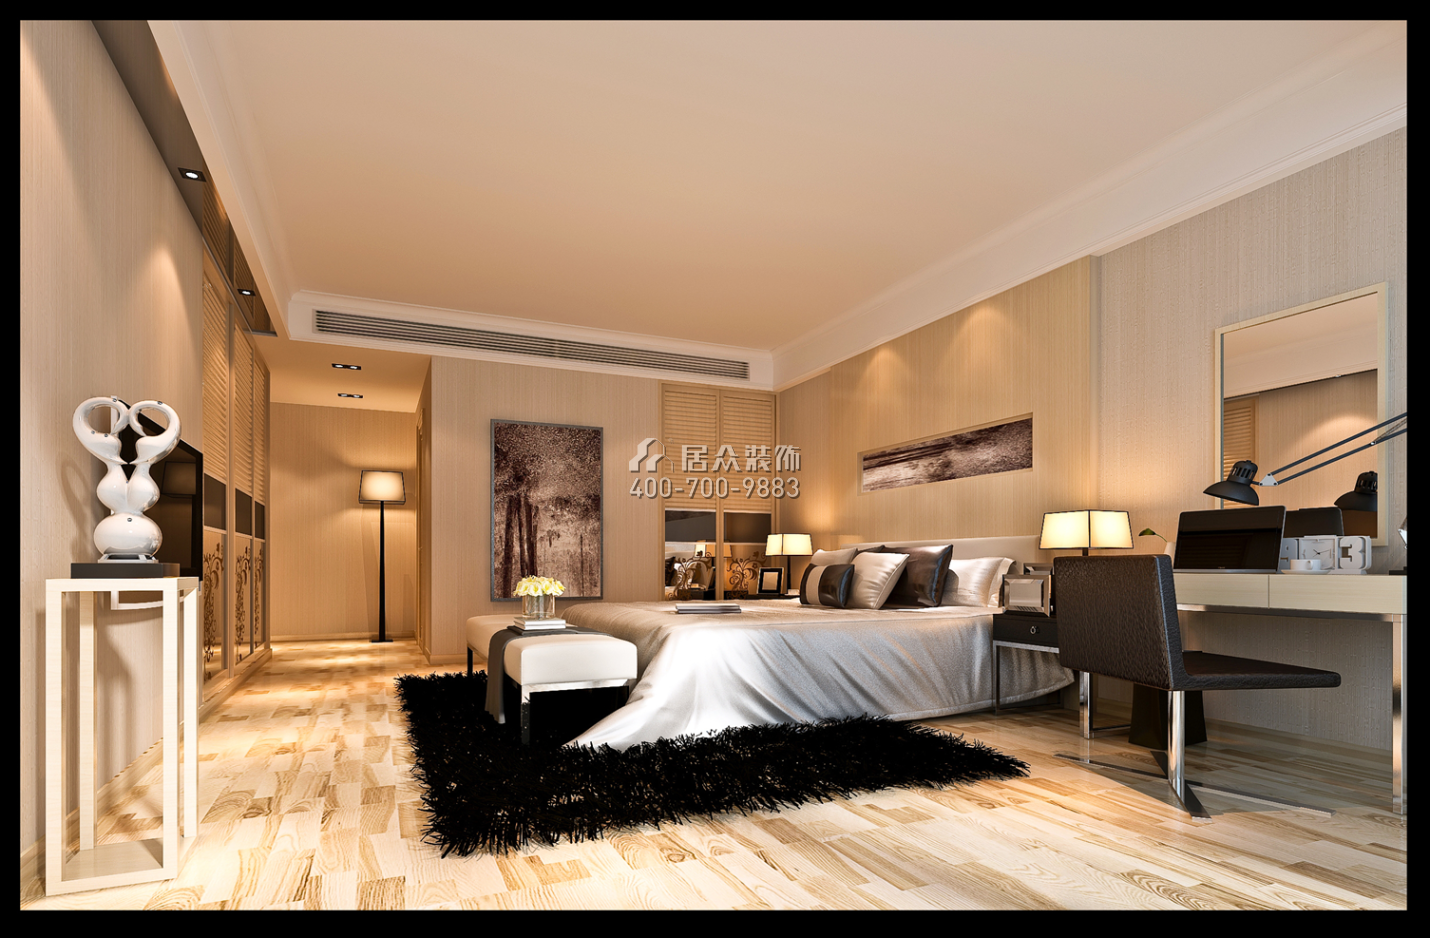 熙园一期168平方米现代简约风格平层户型卧室装修效果图